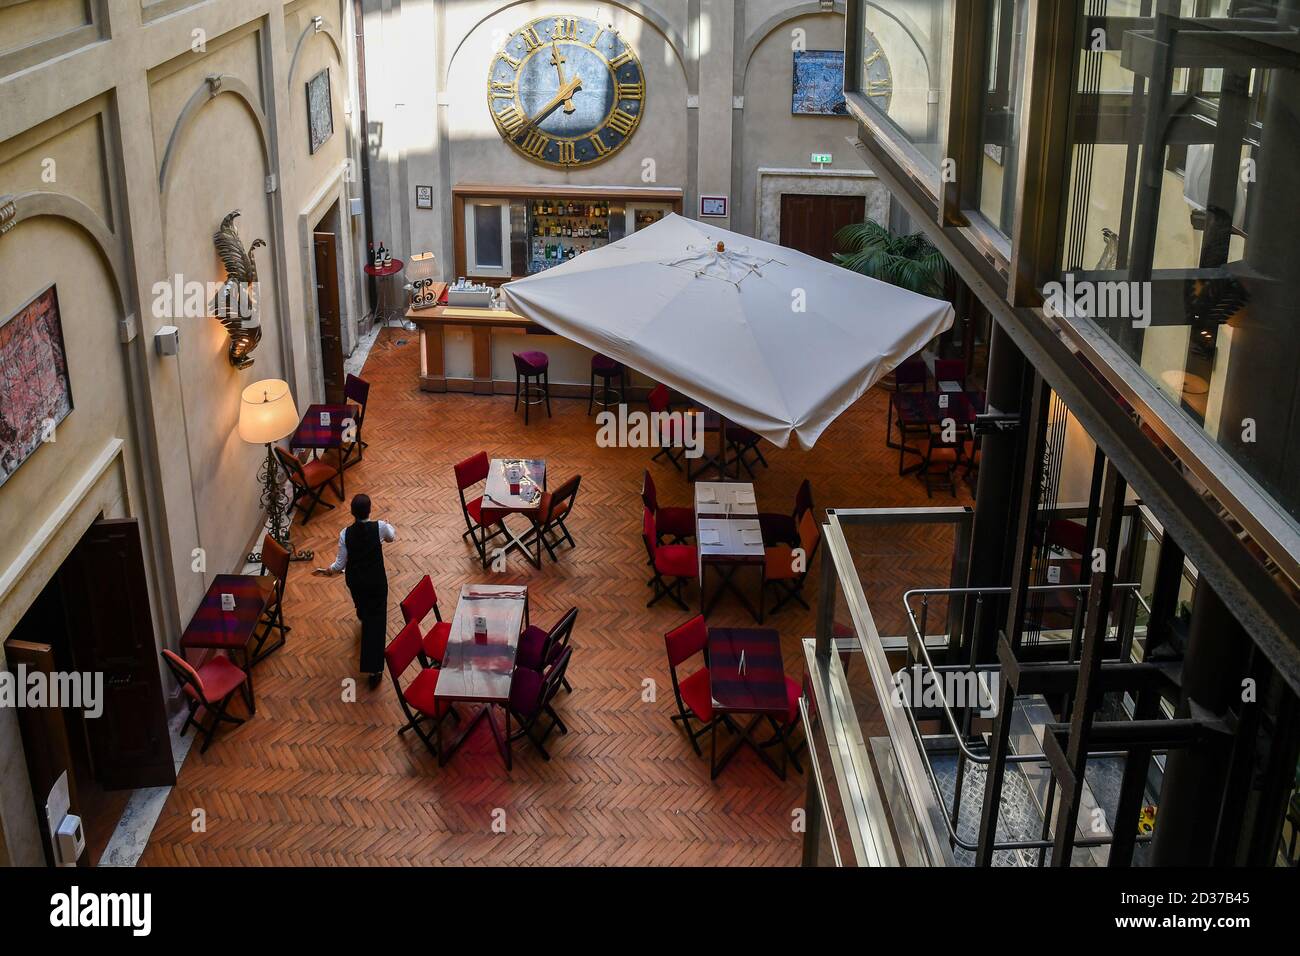 Vista ad alto angolo del lounge bar nel cortile del Grand Hotel Continental, un hotel di lusso a 5 stelle nel centro storico di Siena, Toscana, Italia Foto Stock